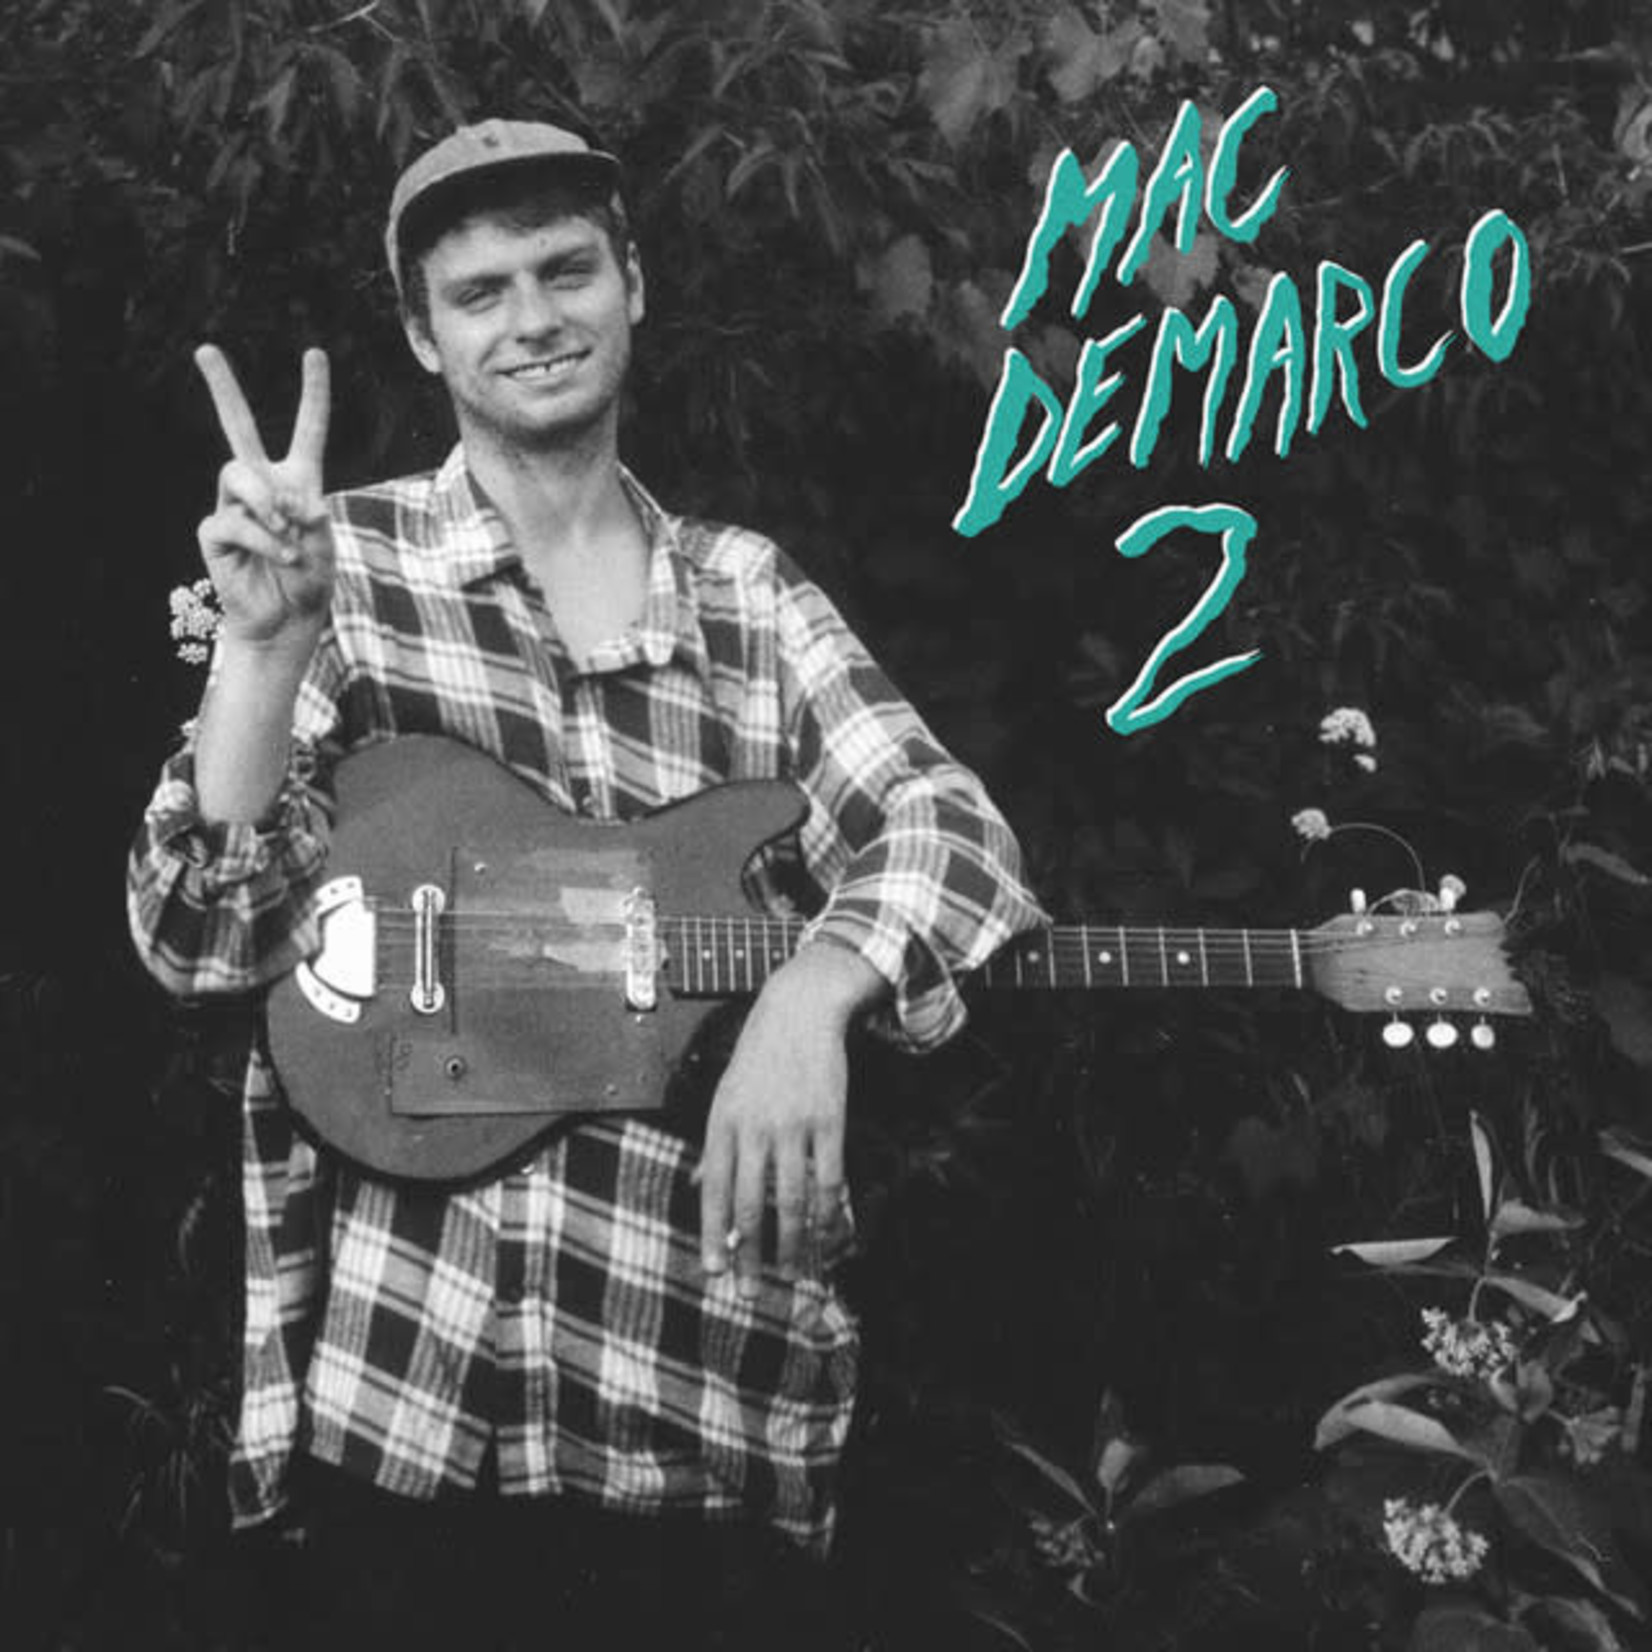 Mac DeMarco - 2